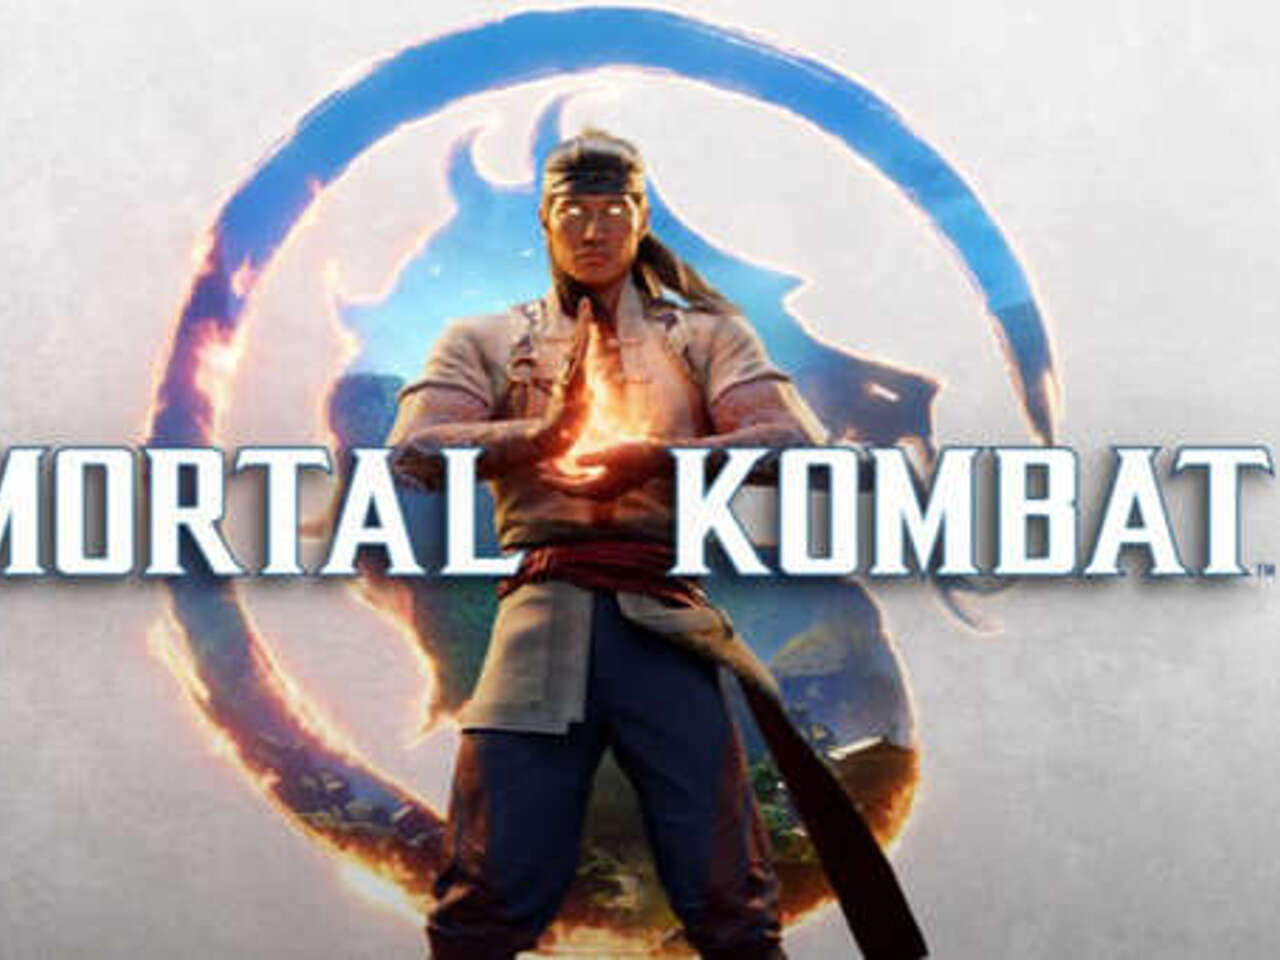 Рейтинг Mortal Kombat 1 опустили ниже пяти баллов - Происшествия